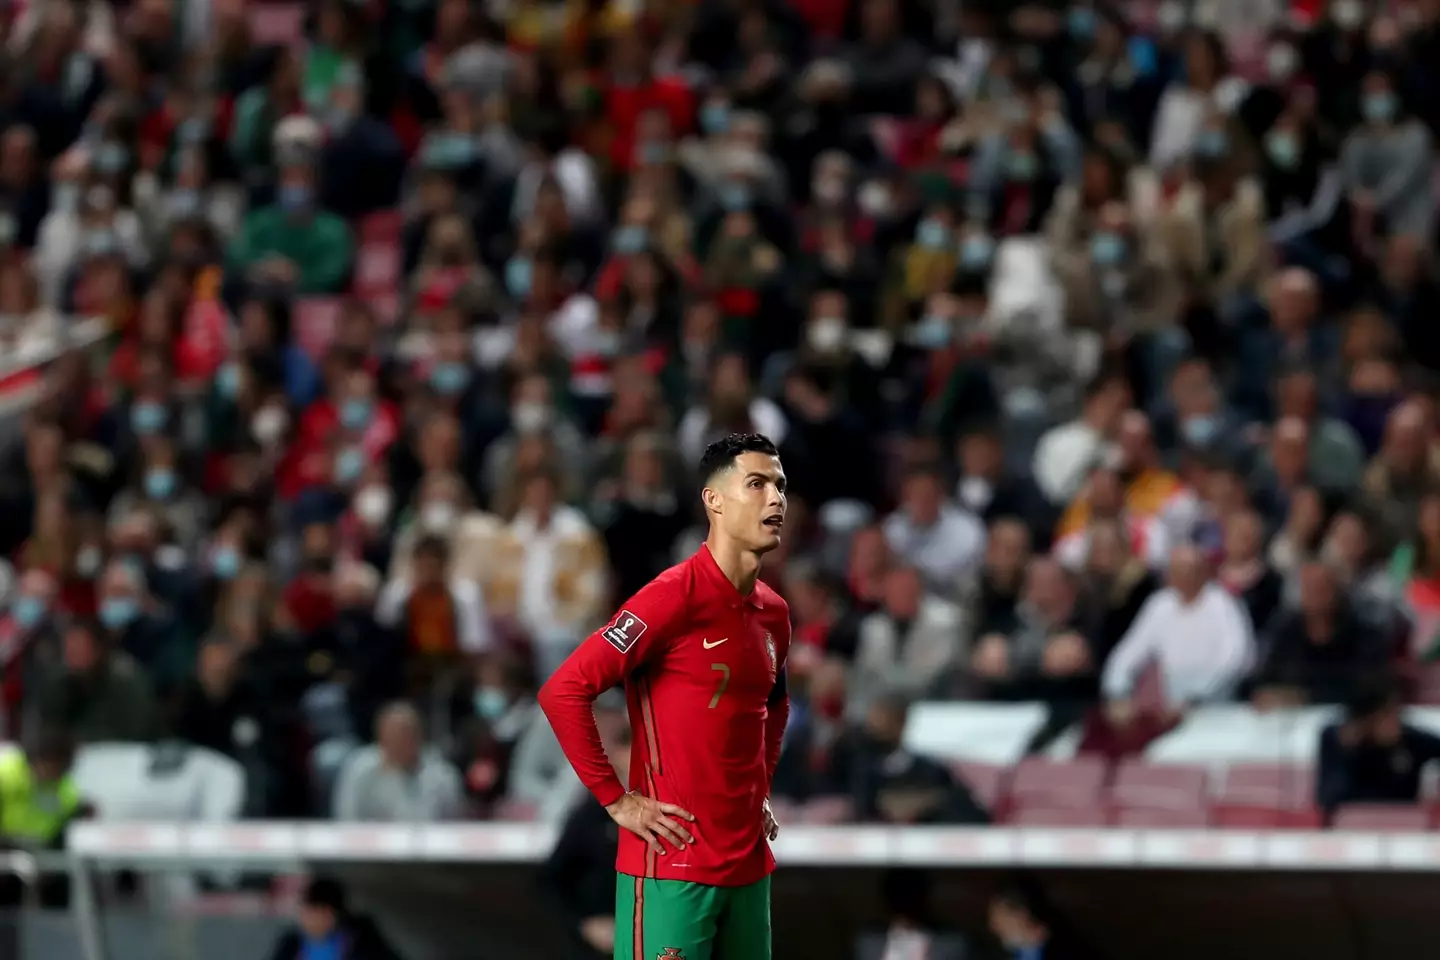 Ronaldo was not happy on Sunday. Image: PA Images